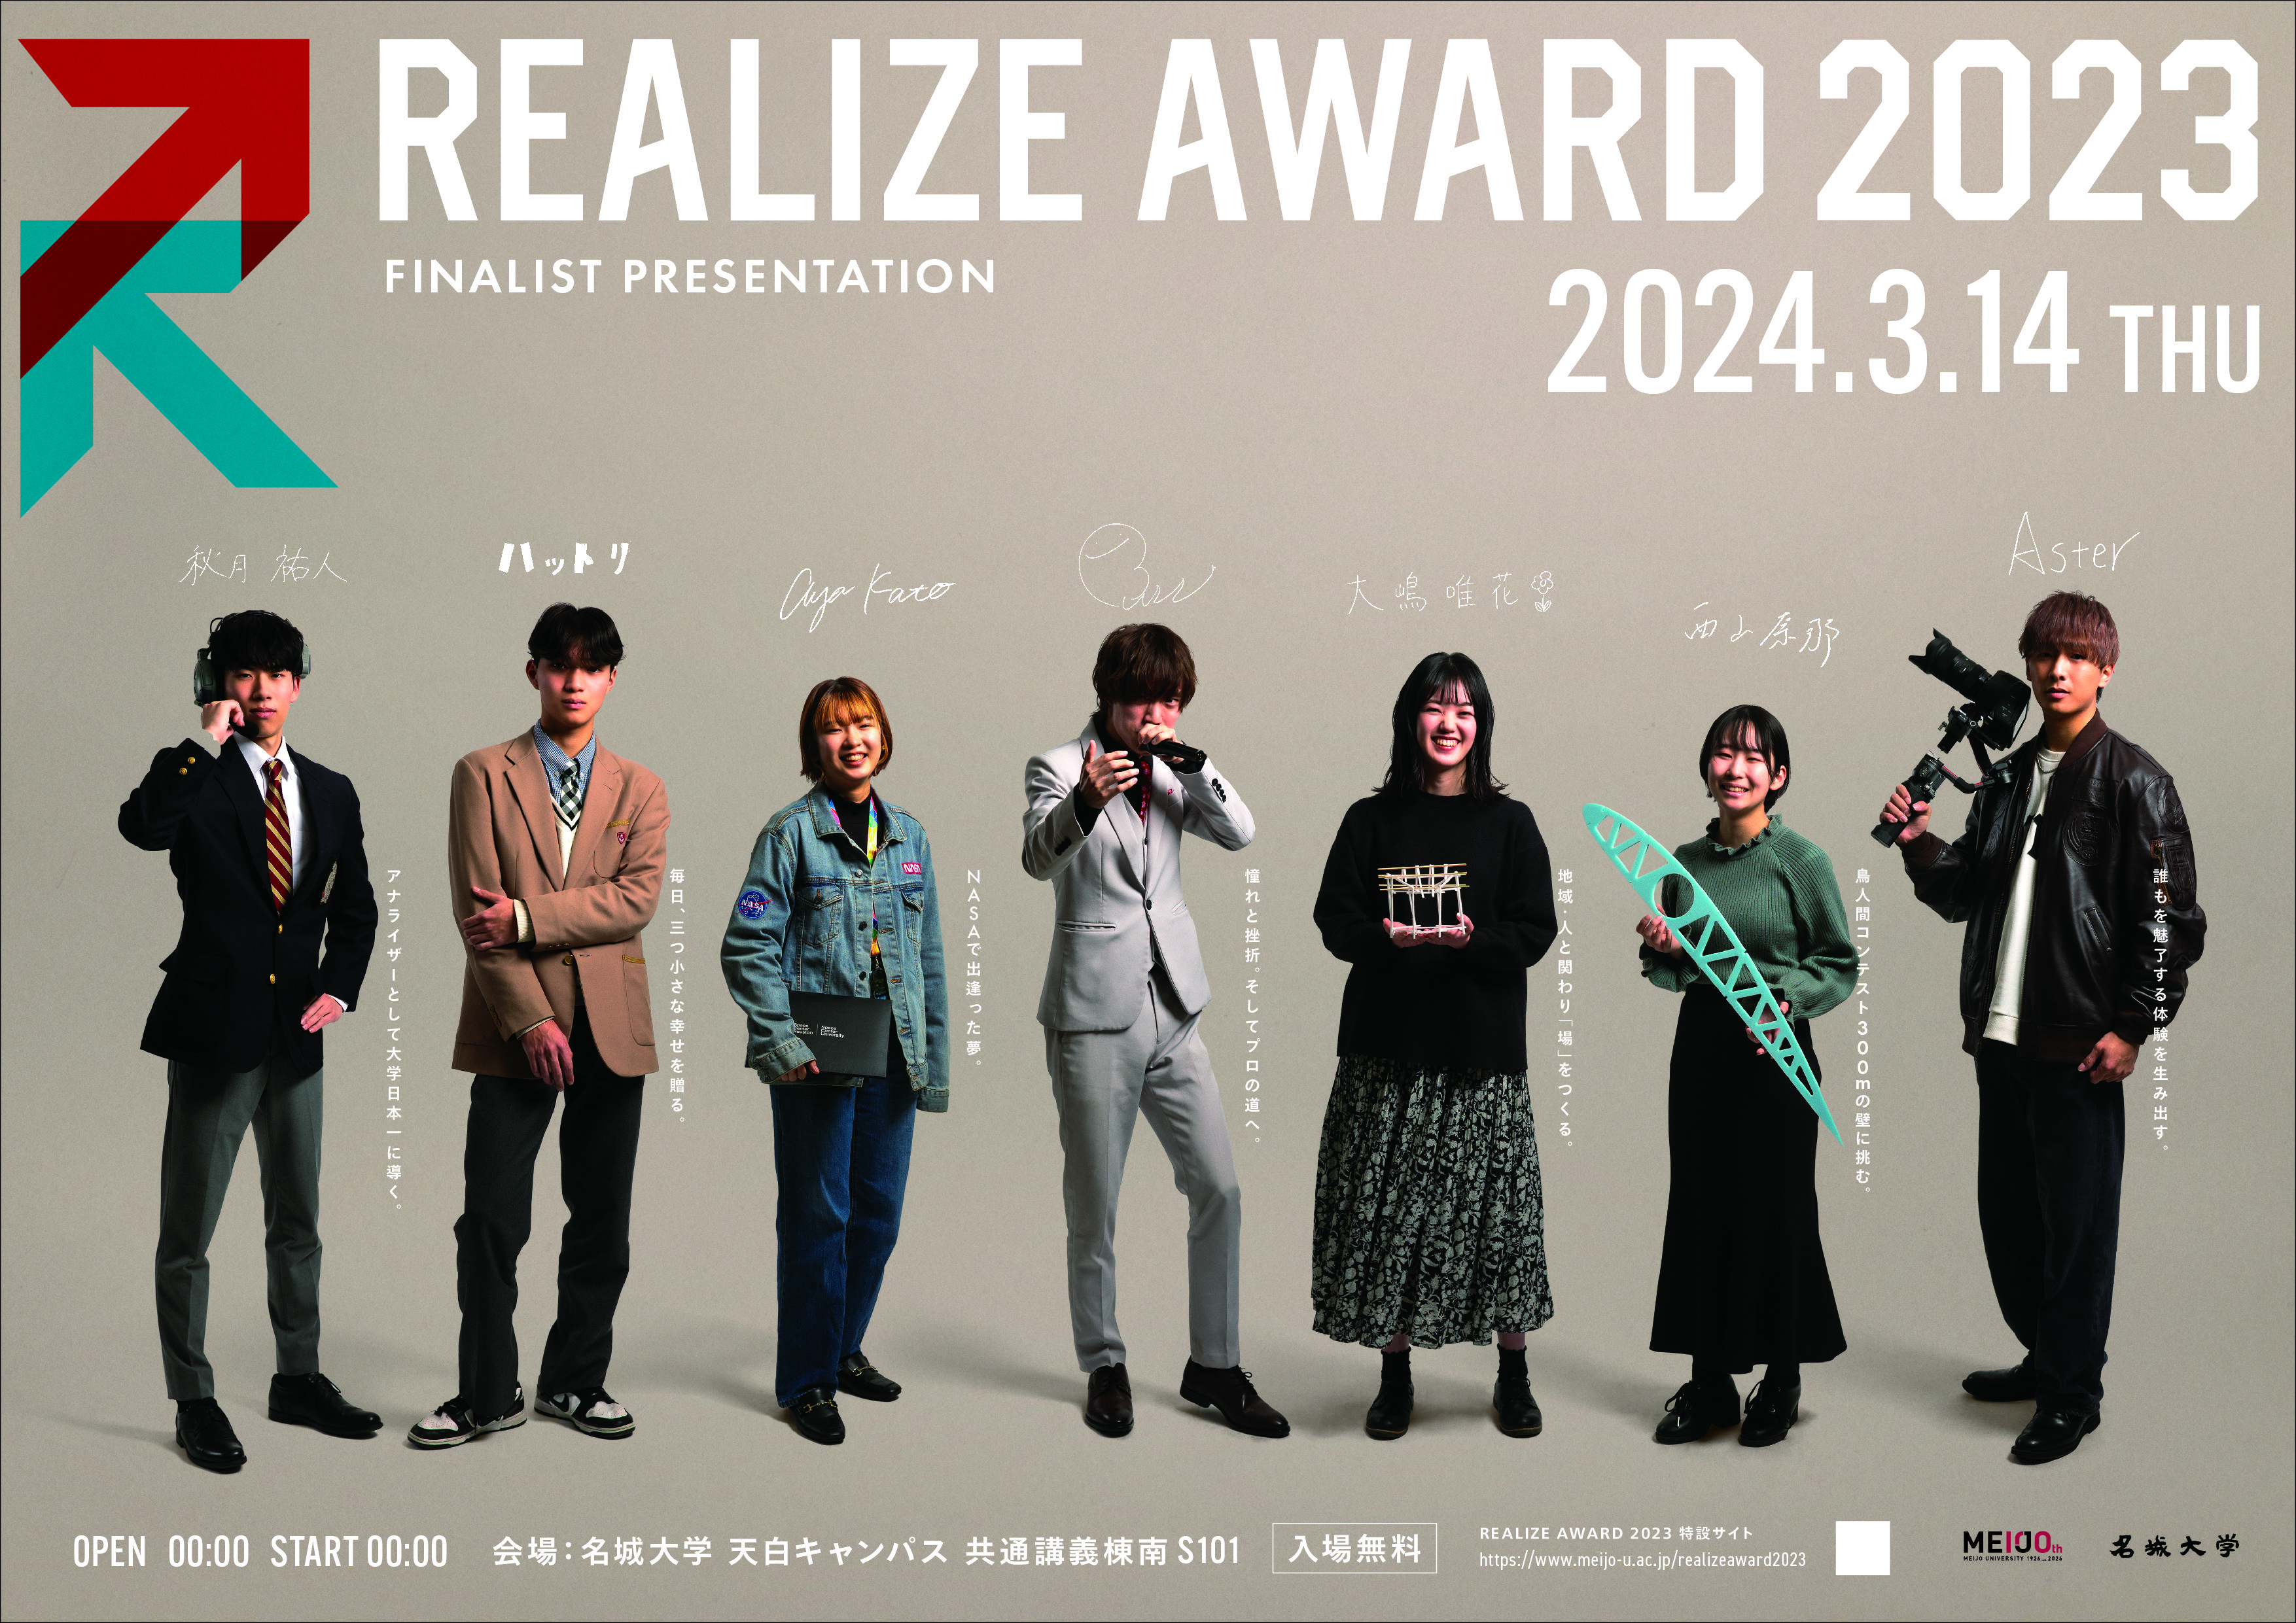 名城大学開学100周年企画「REALIZE AWARD 2023」3.14ファイナリストがプレゼン！！